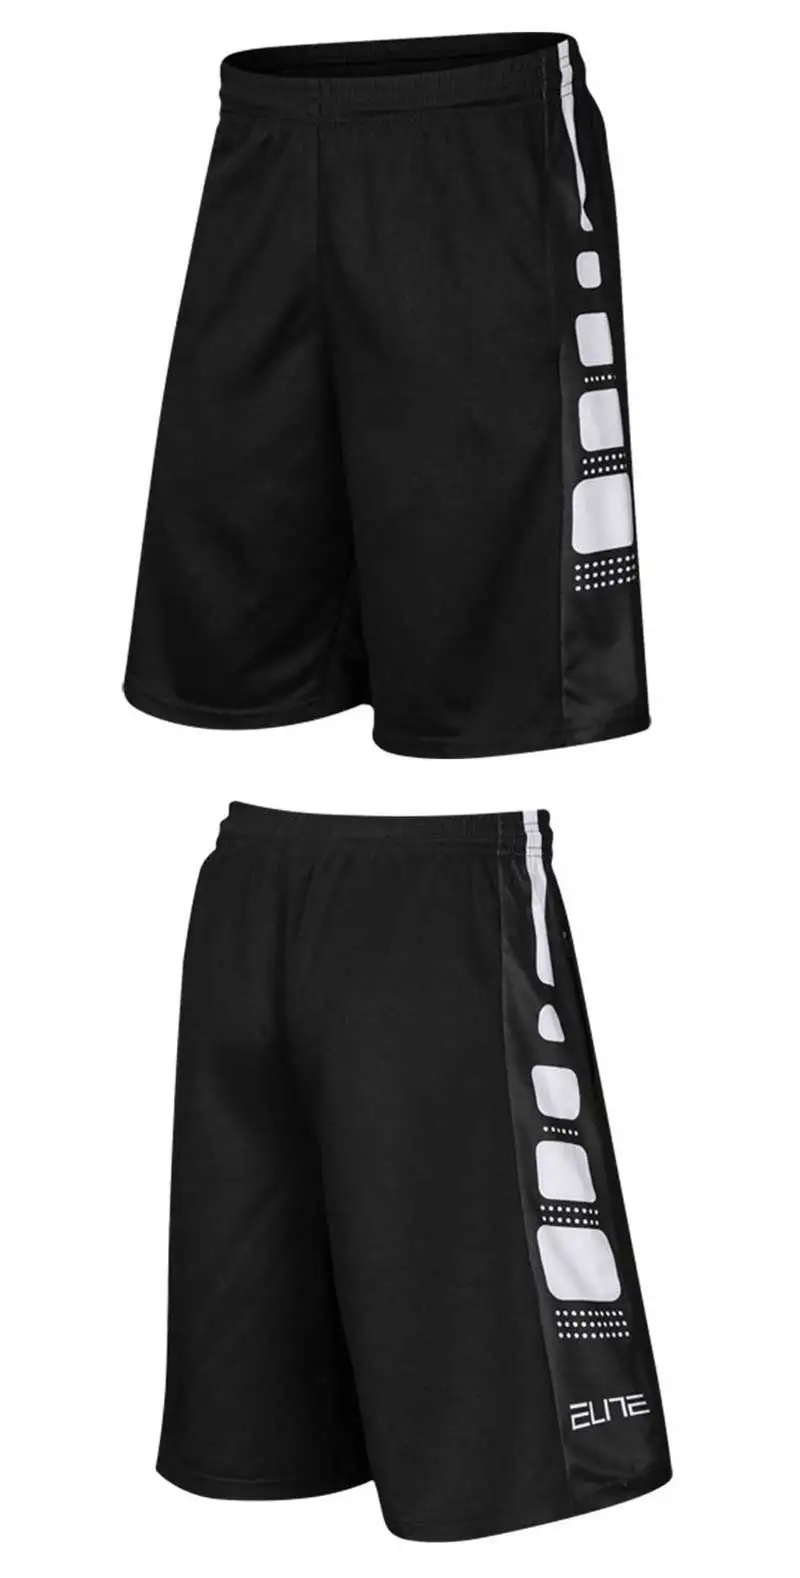 Хит, спортивные мужские шорты для занятия баскетболом, профессиональные спортивные шорты для тренировок, Свободный дышащий облегающий тренировочный костюм, шорты для бега